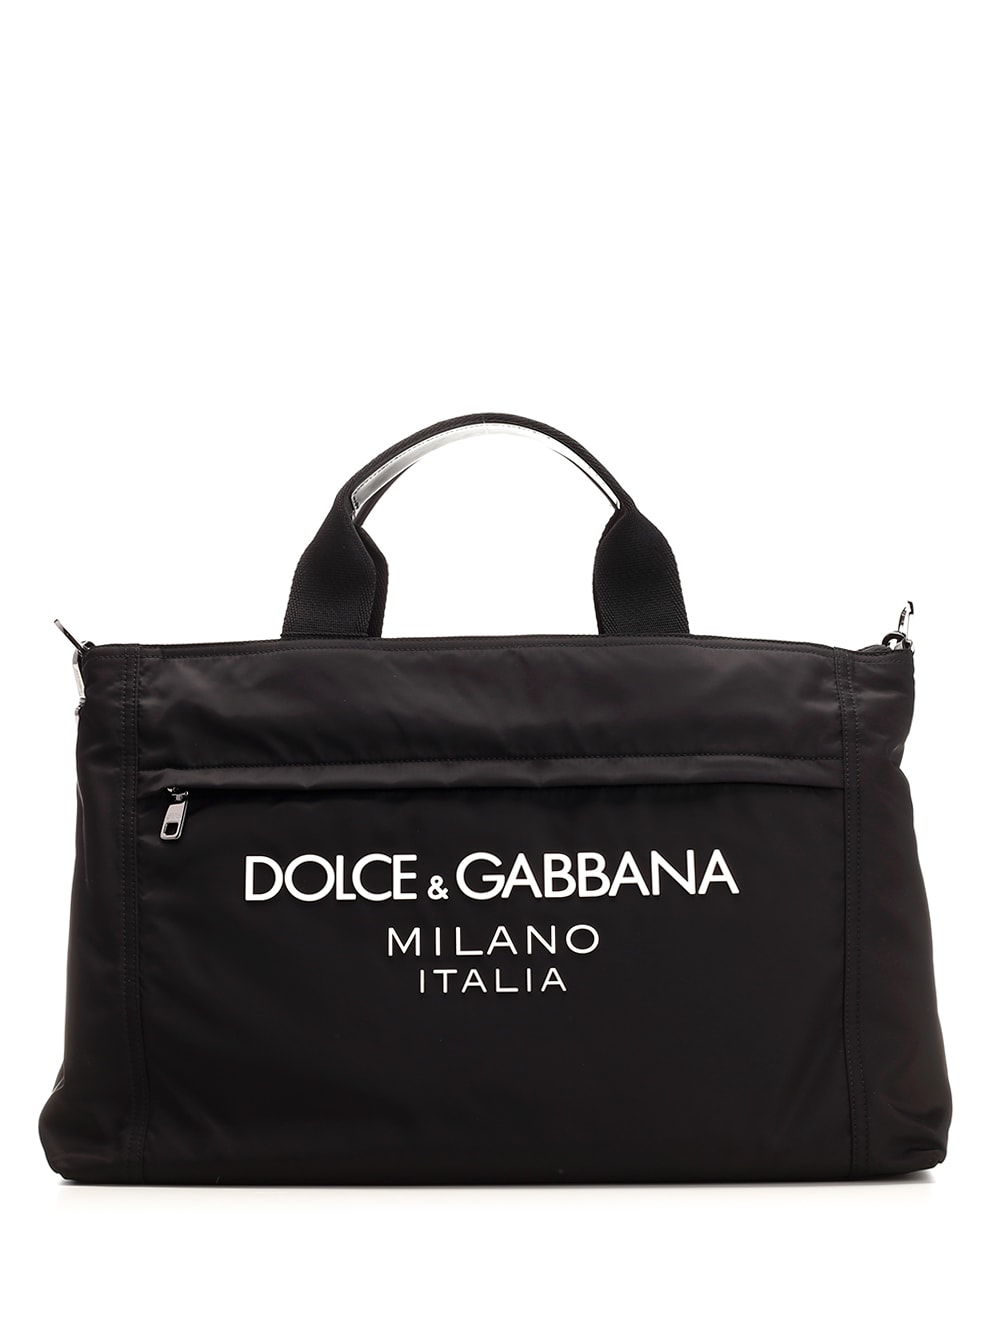 Dolce & Gabbana Signature Tote Bag In Black